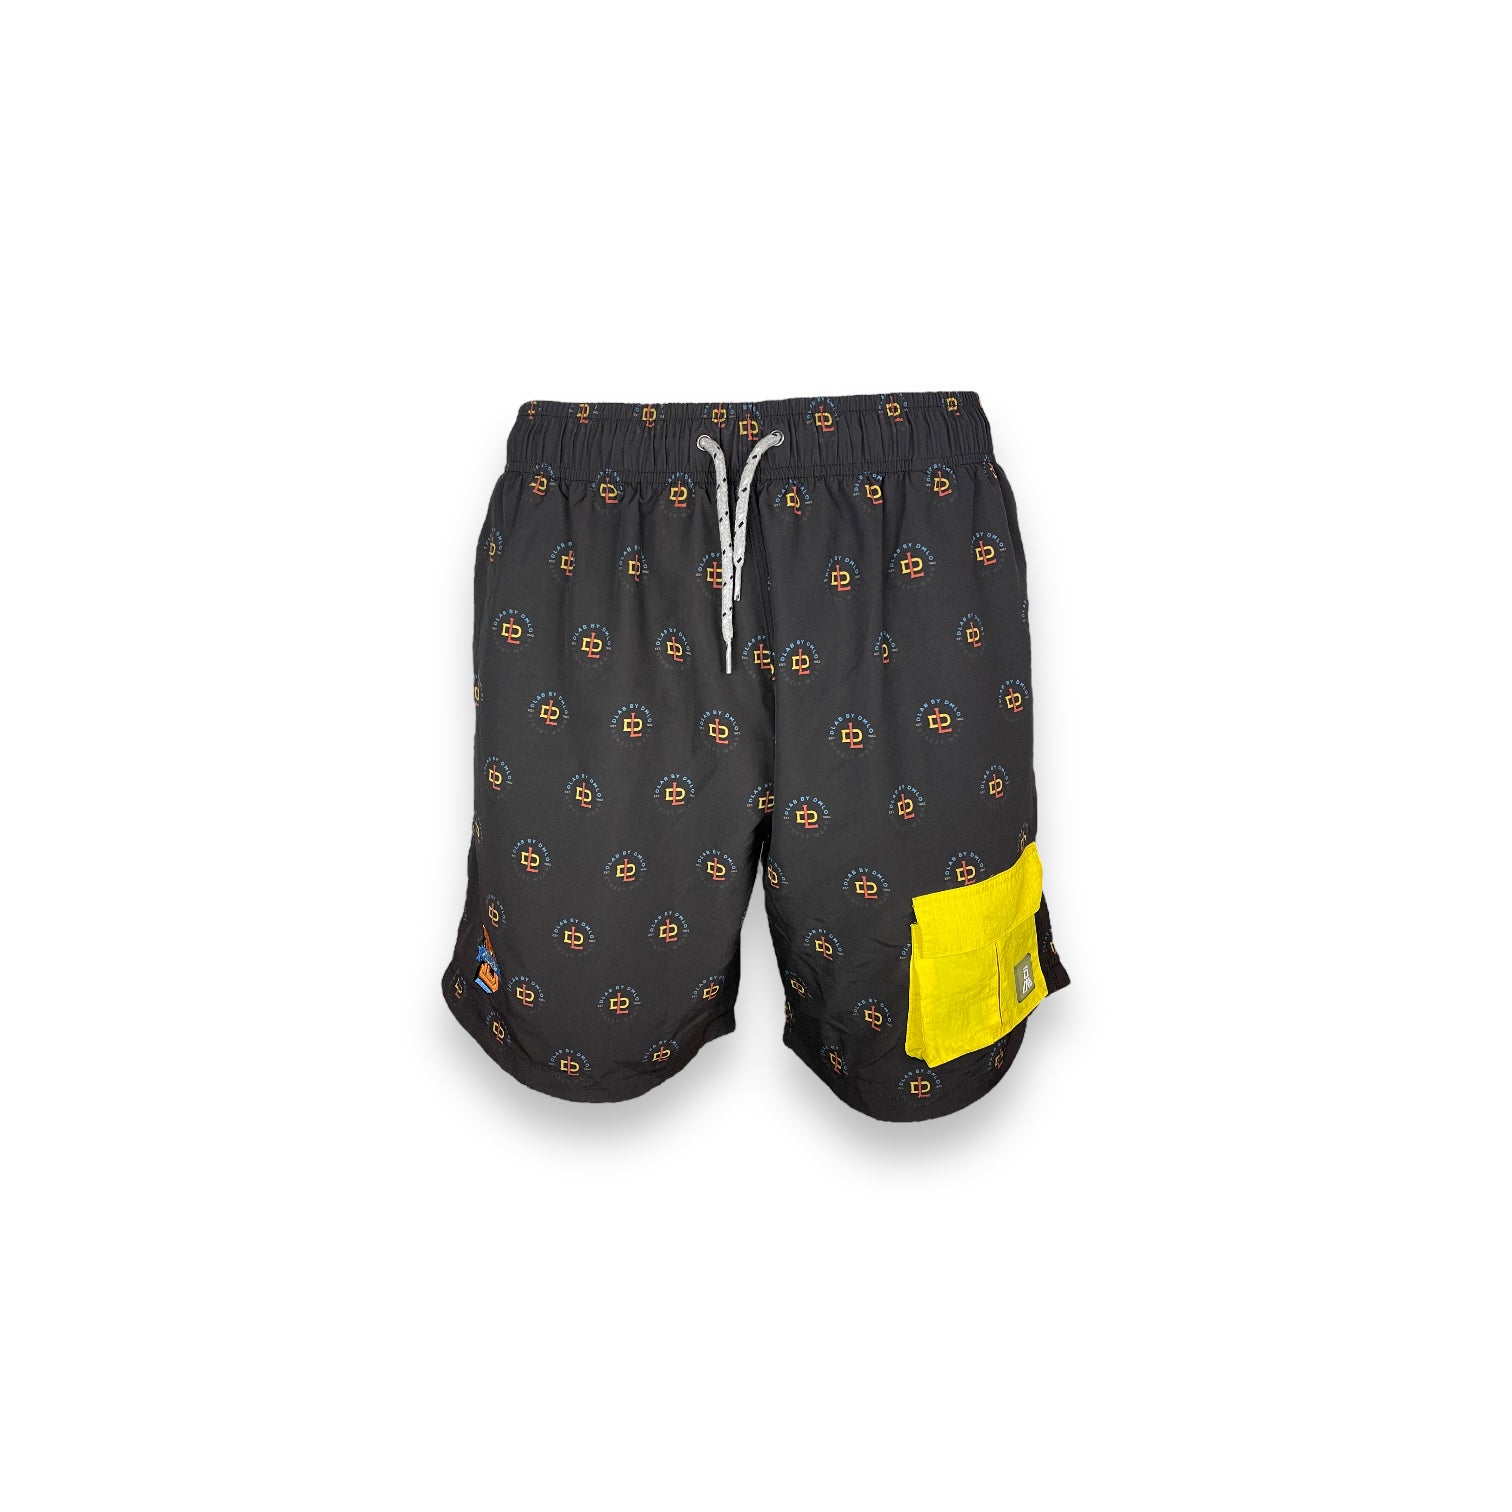 DLAB Hybrid Shorts Black Sublimated with Yellow Pocket